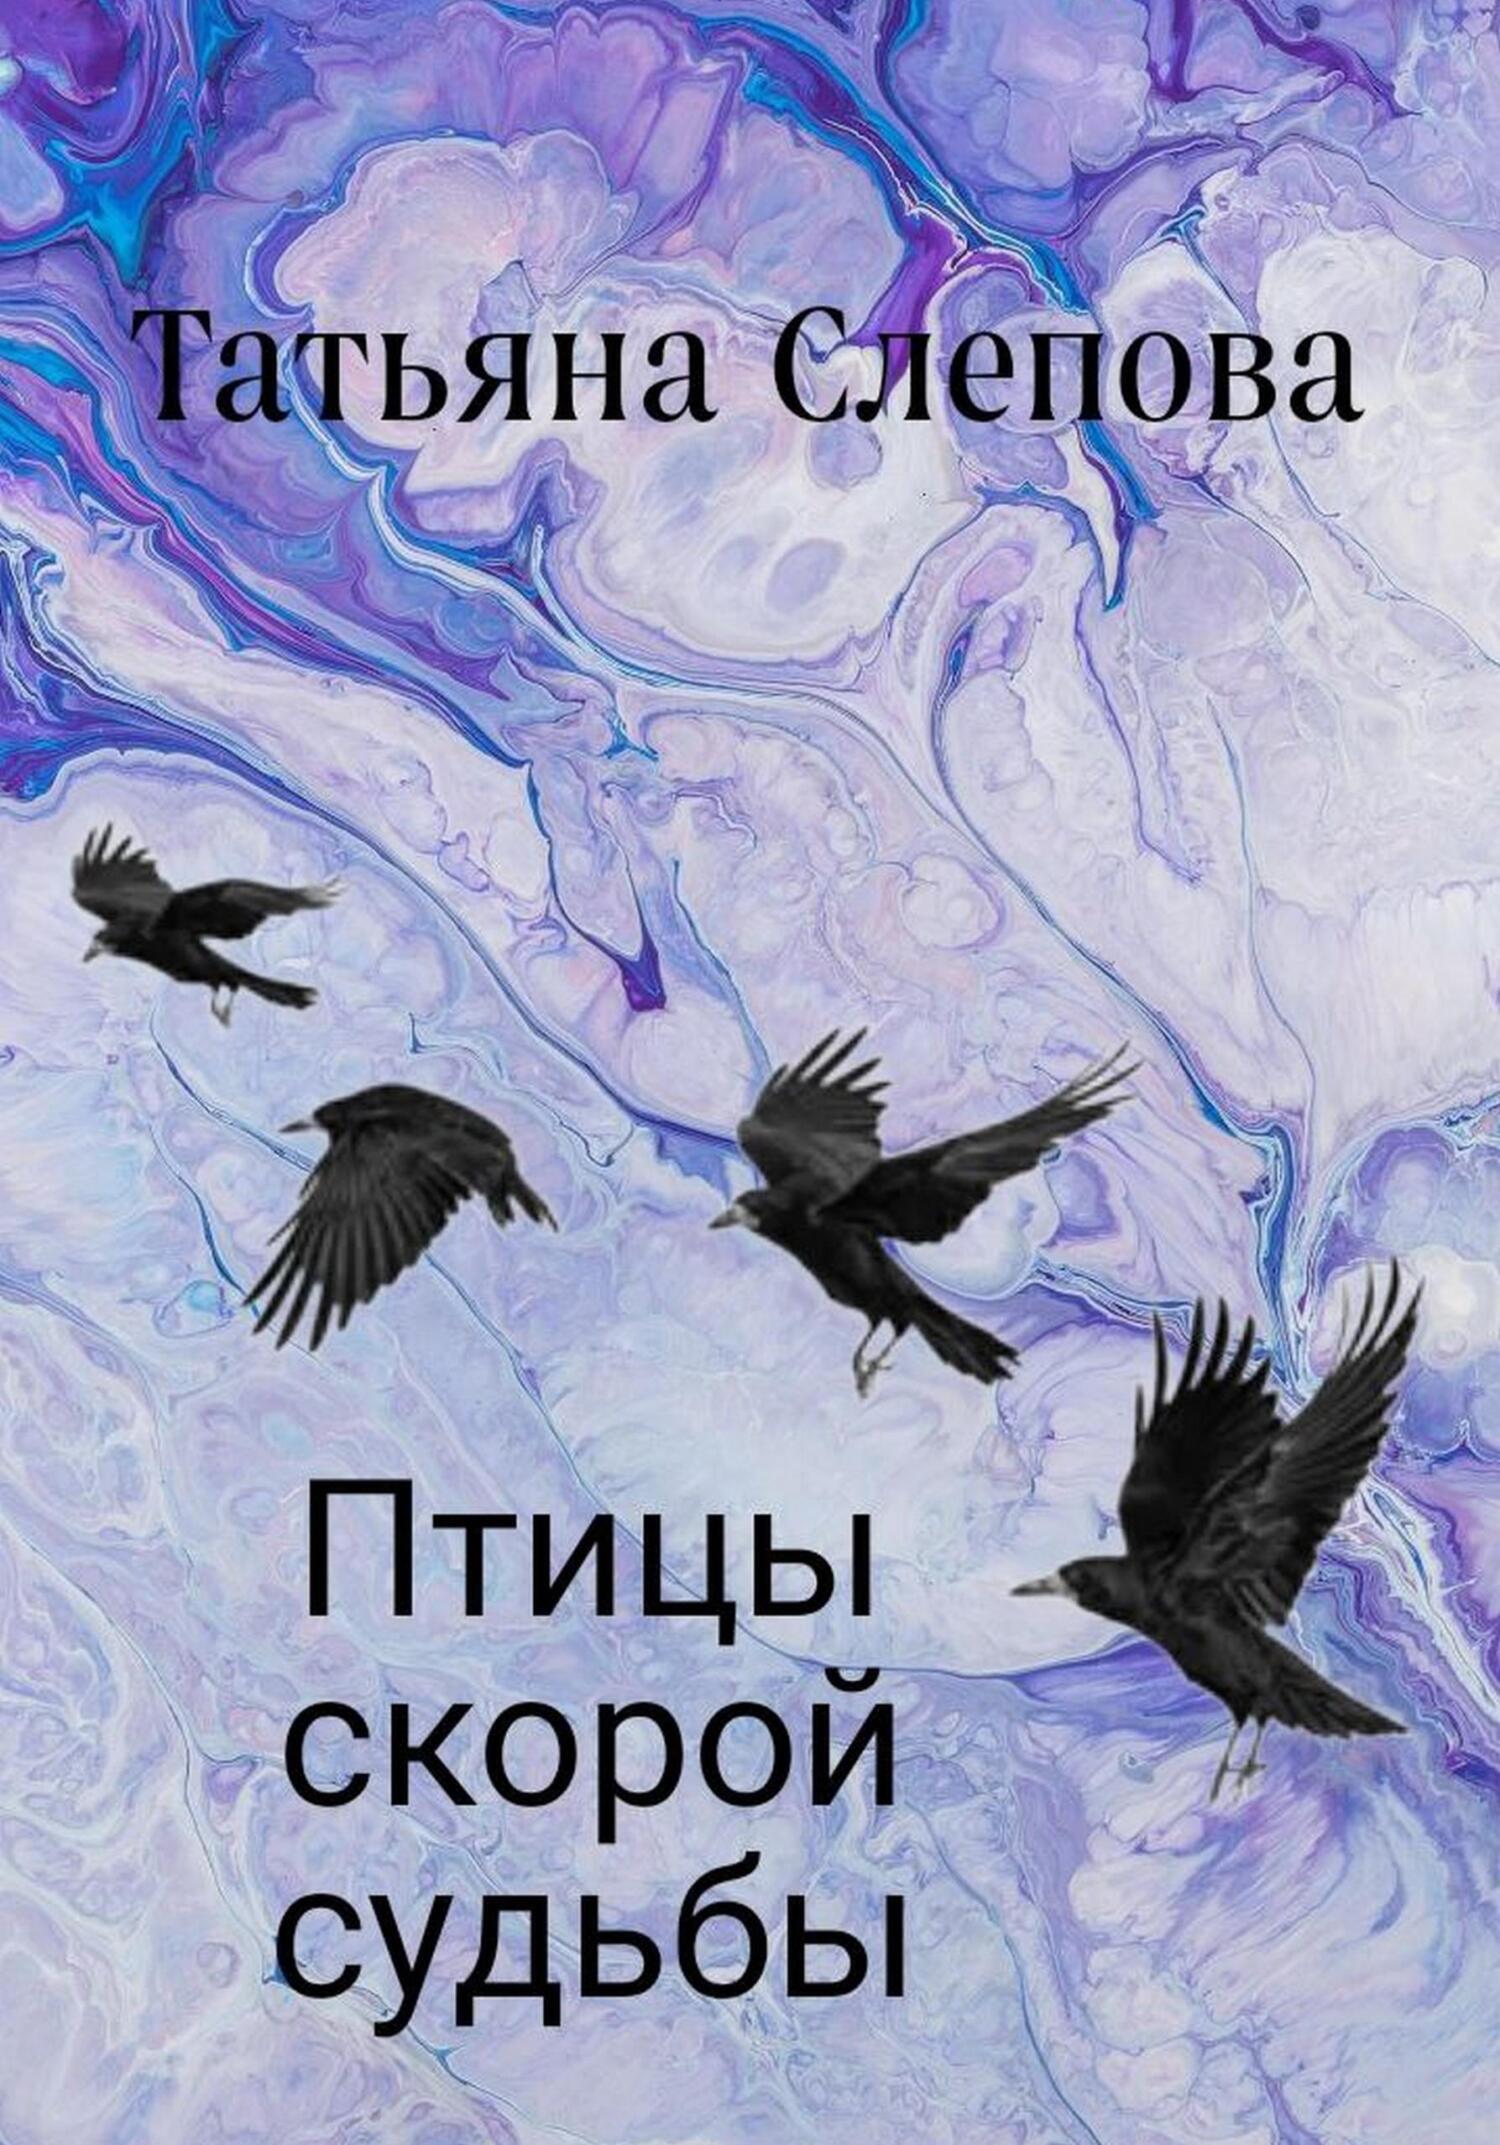 Птицы скорой судьбы - Татьяна Слепова